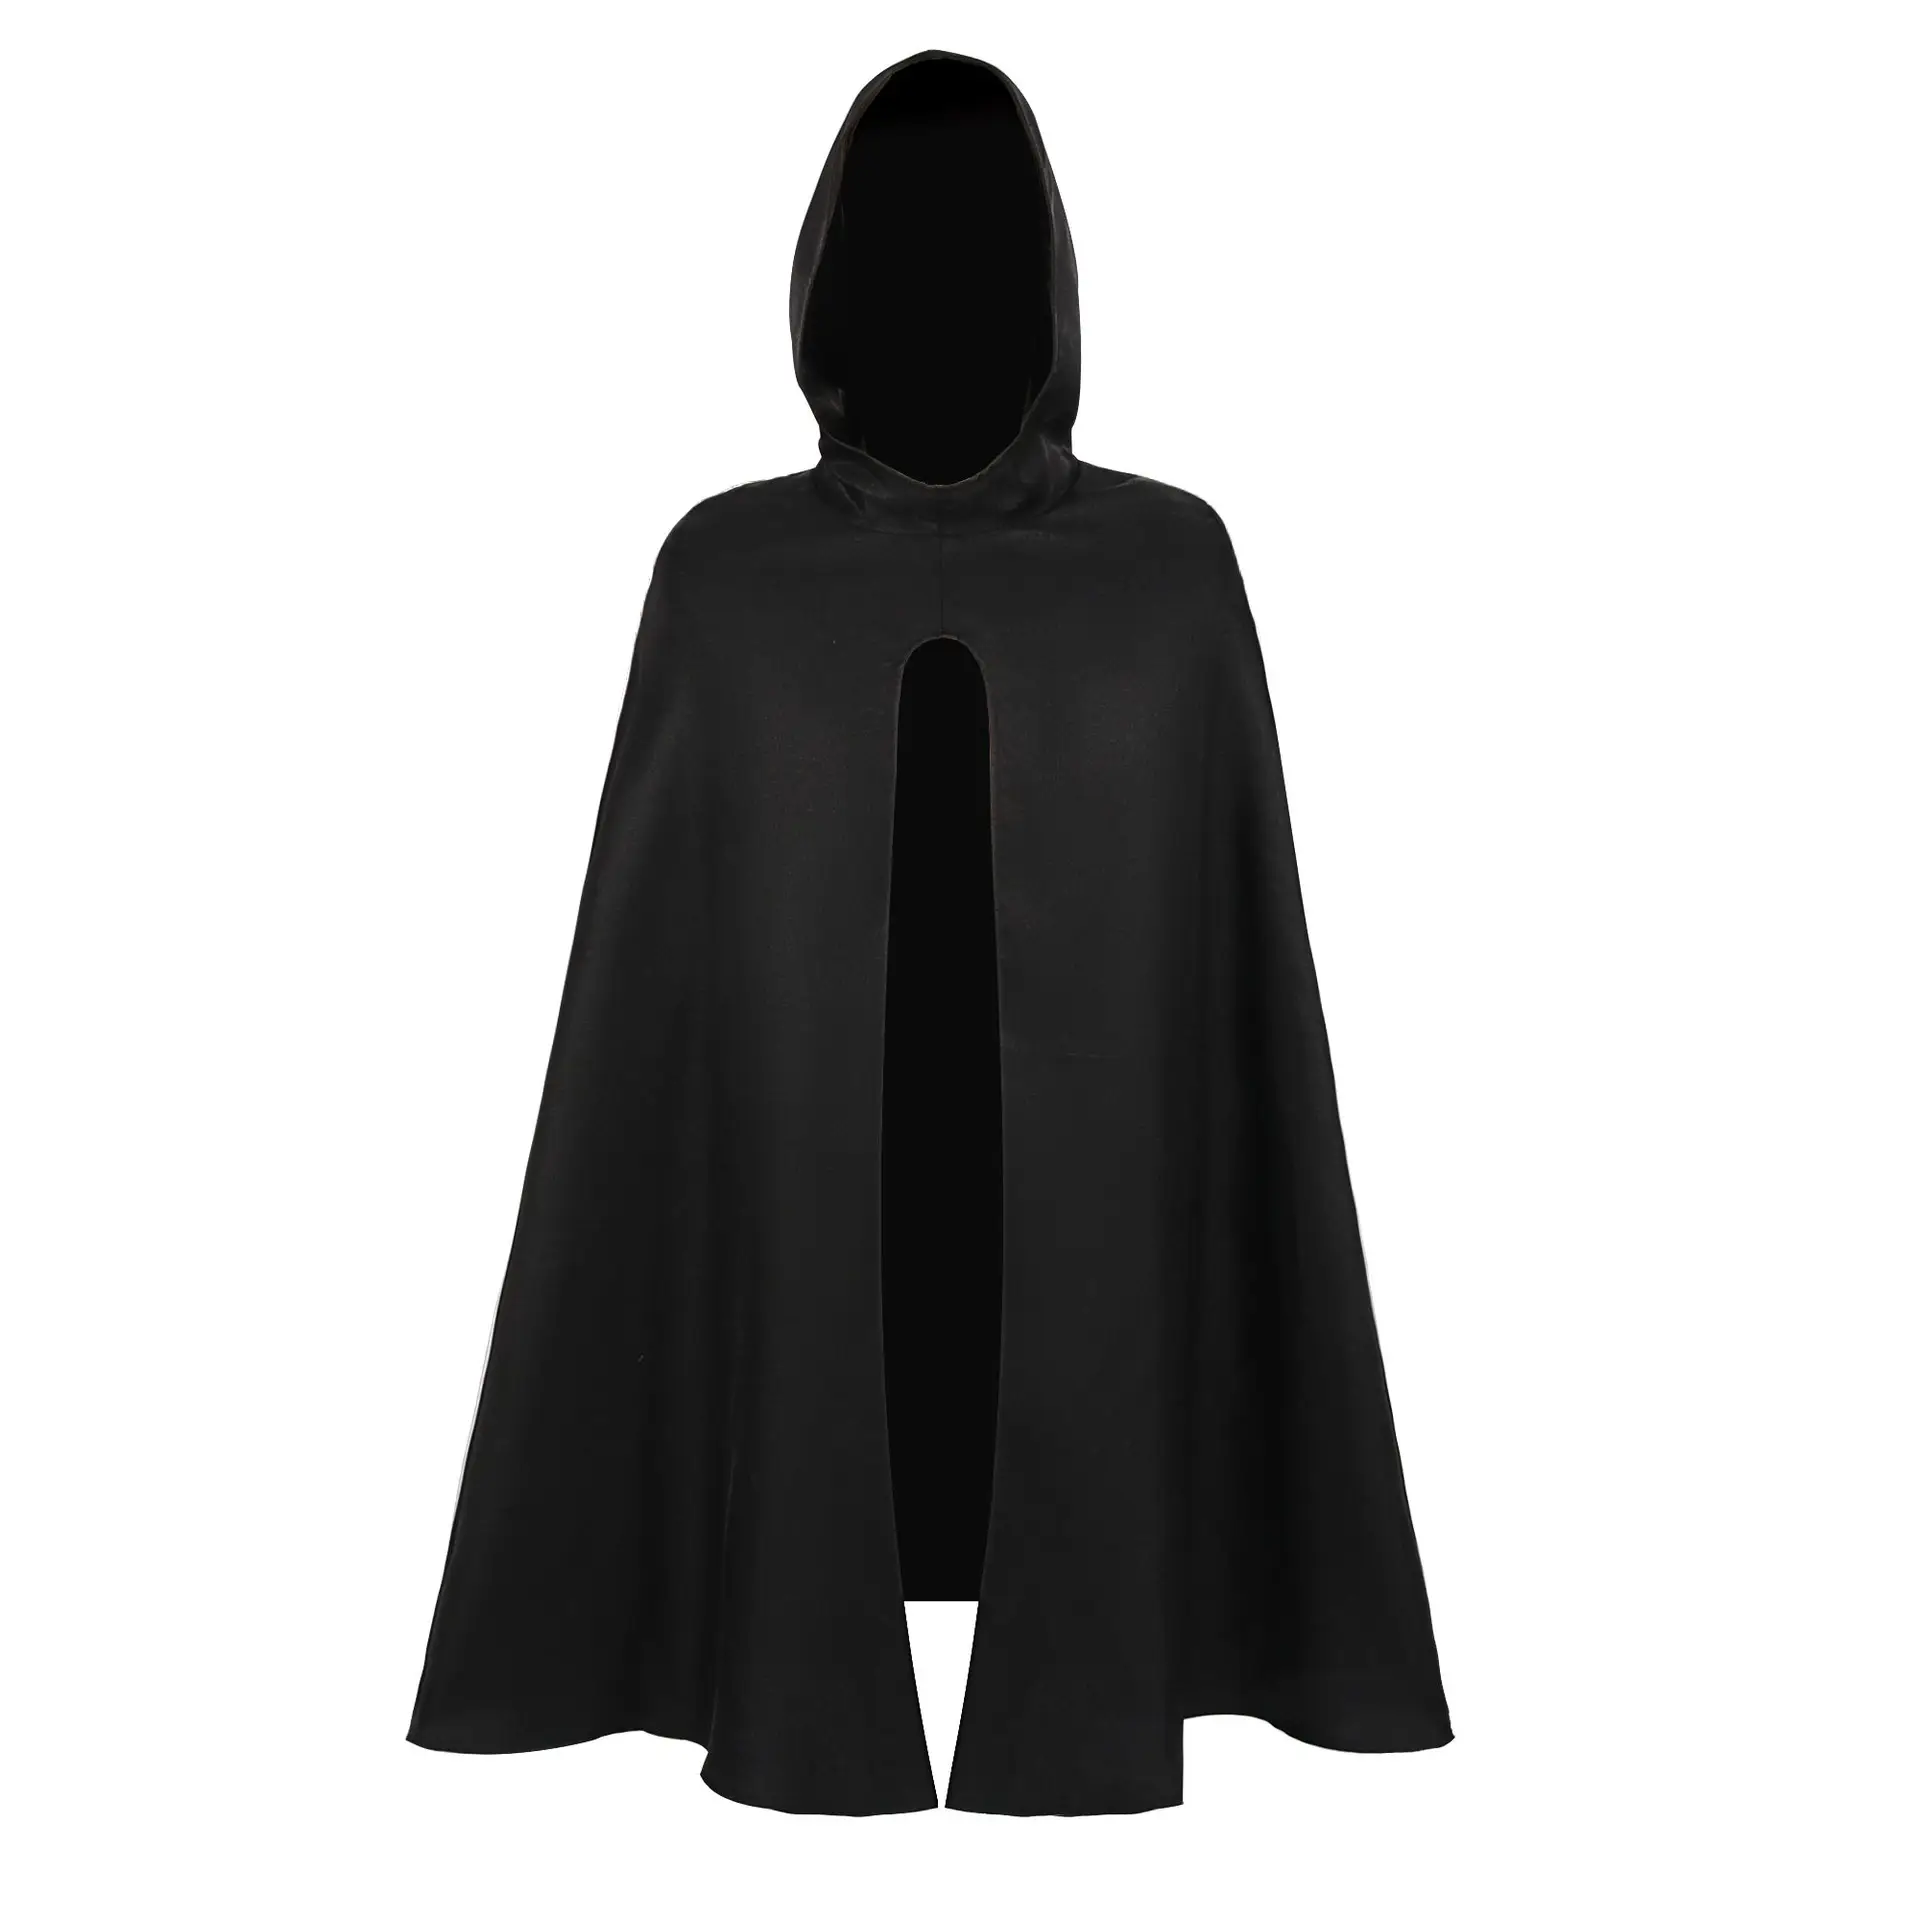 أزياء الهالوين بدلة تنكرية بتصميم قرون وسطى بغطاء للرأس أسود توضع على الرأس أثناء ممارسة الجنس